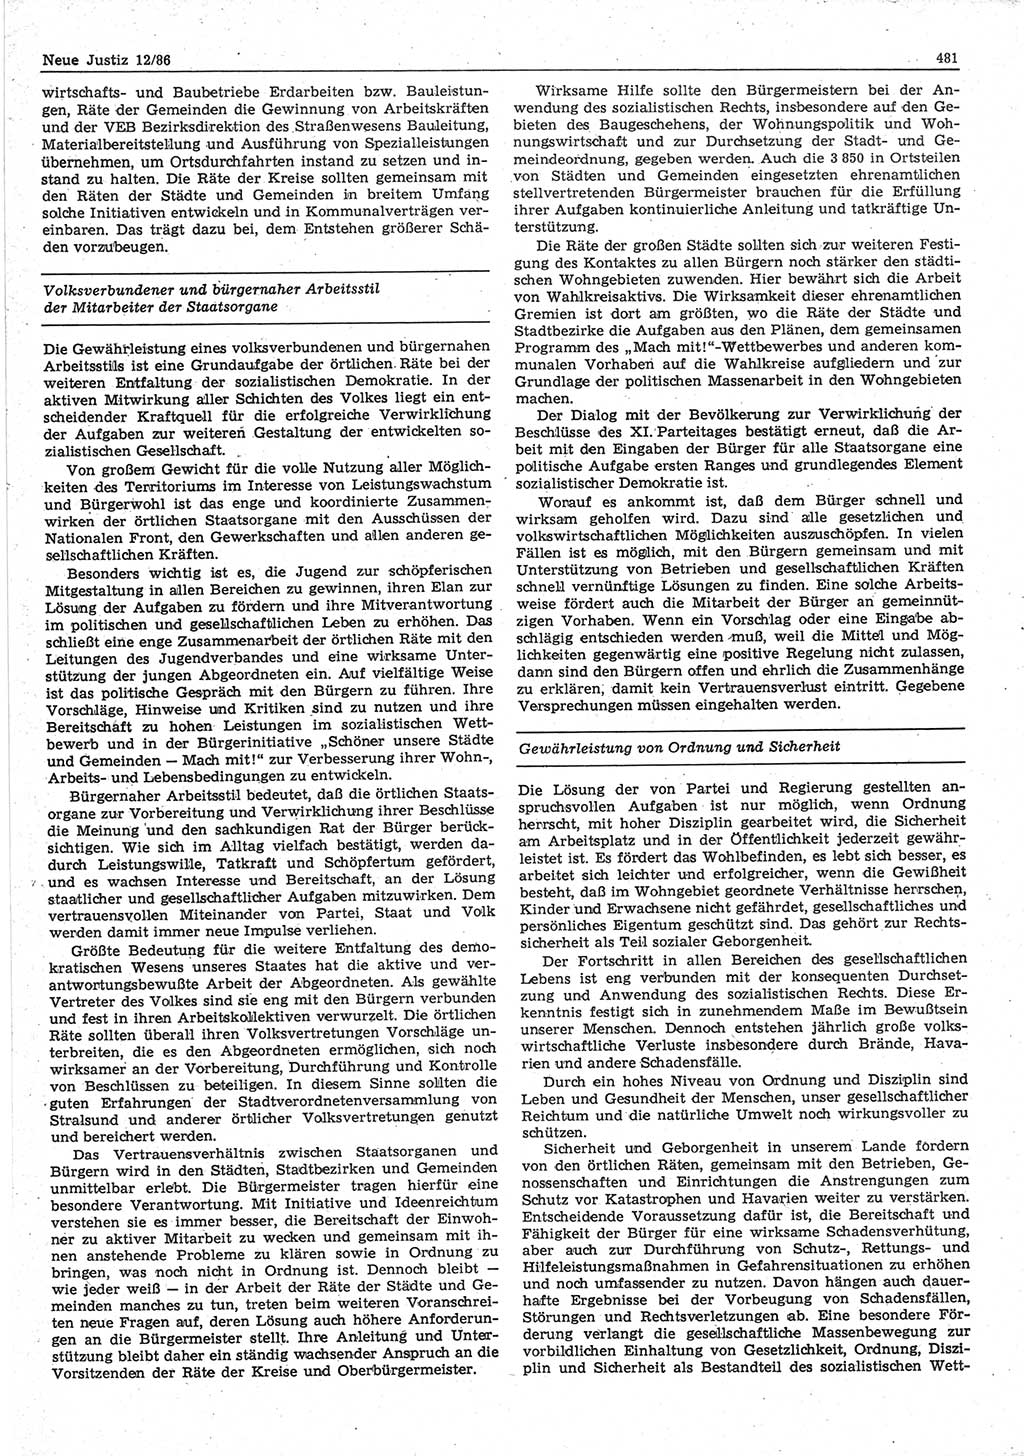 Neue Justiz (NJ), Zeitschrift für sozialistisches Recht und Gesetzlichkeit [Deutsche Demokratische Republik (DDR)], 40. Jahrgang 1986, Seite 481 (NJ DDR 1986, S. 481)